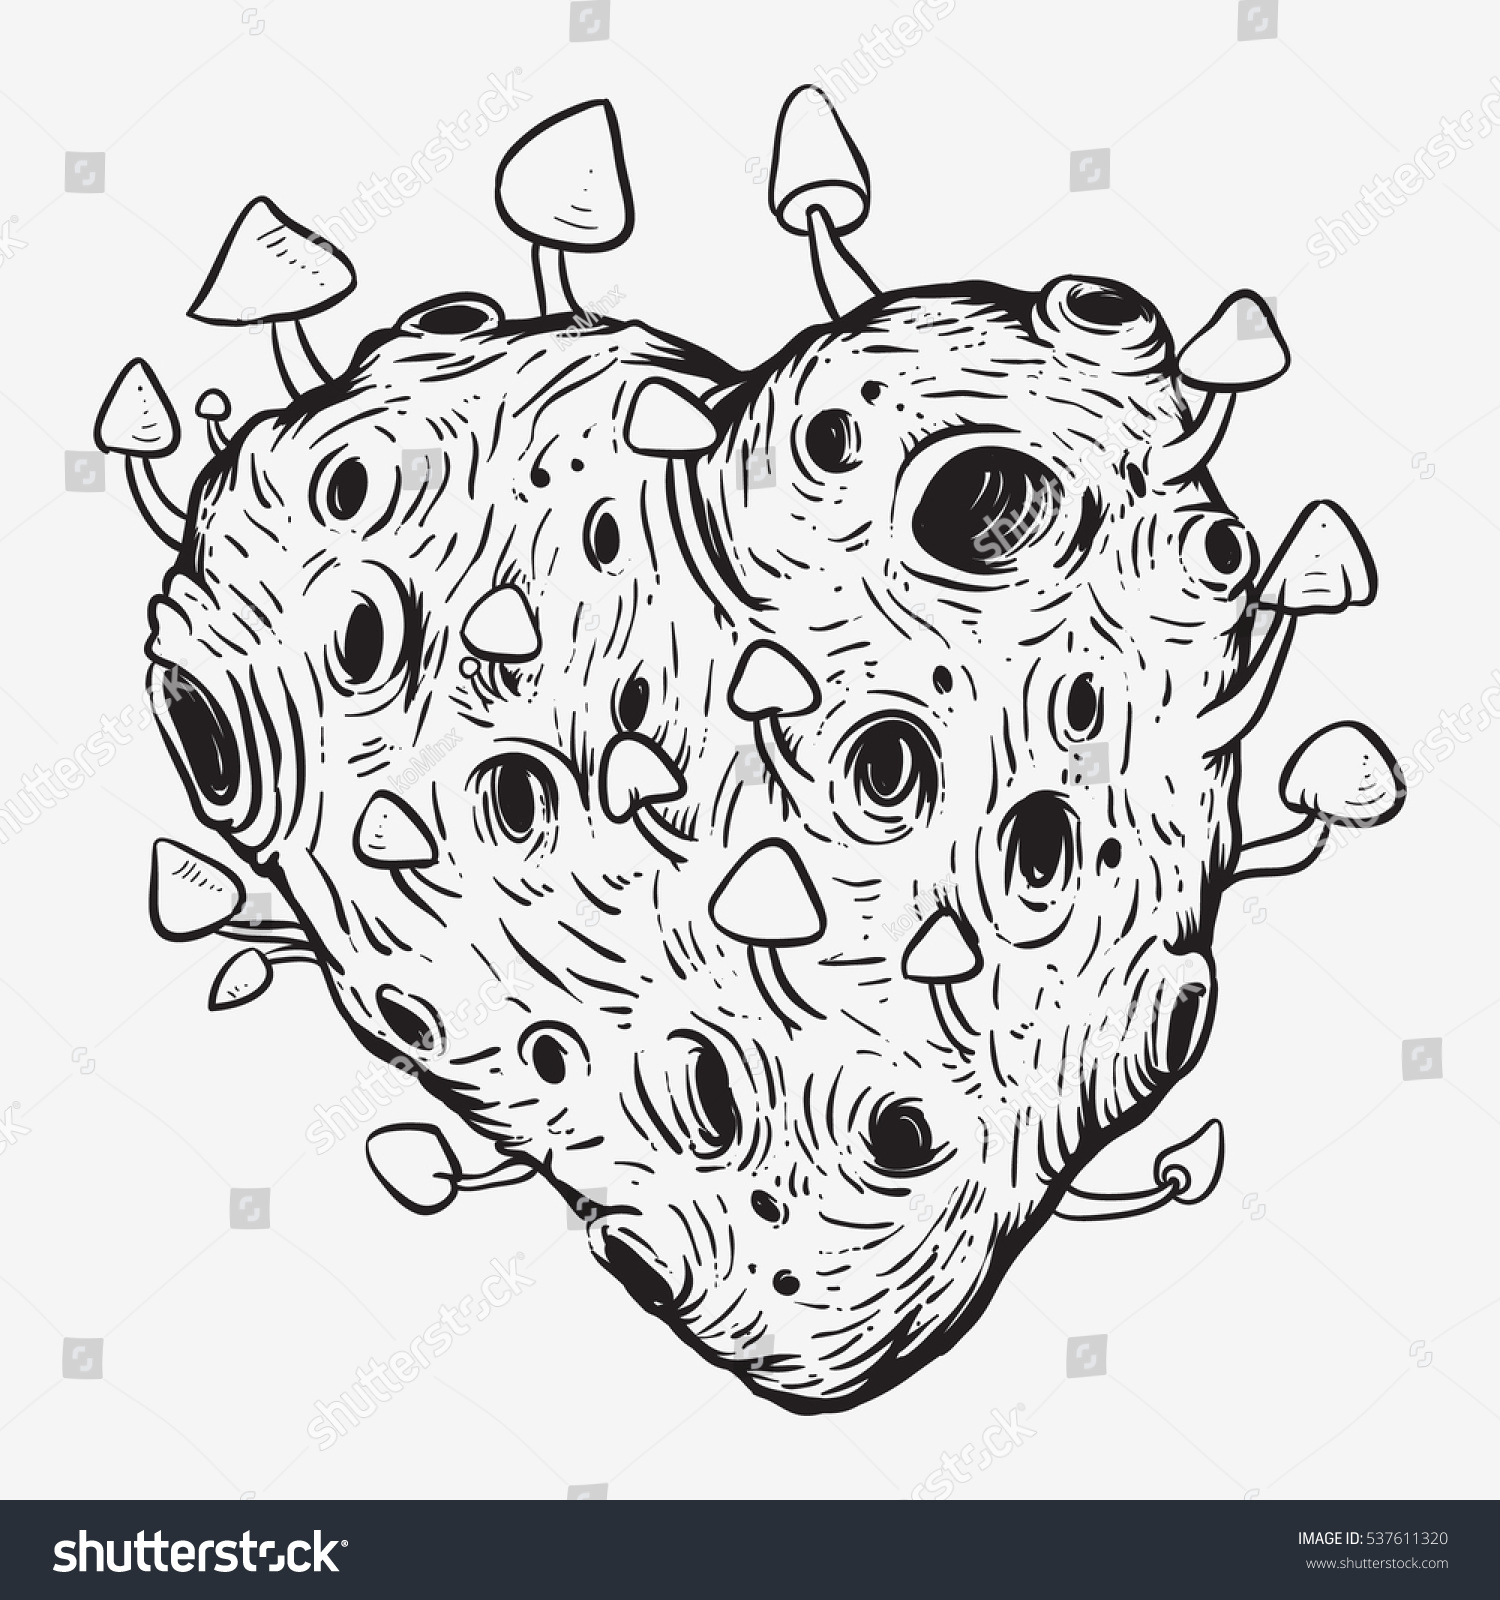 Mushrooms Heart Hand Drawing Sketch vector de stock (libre de regalías